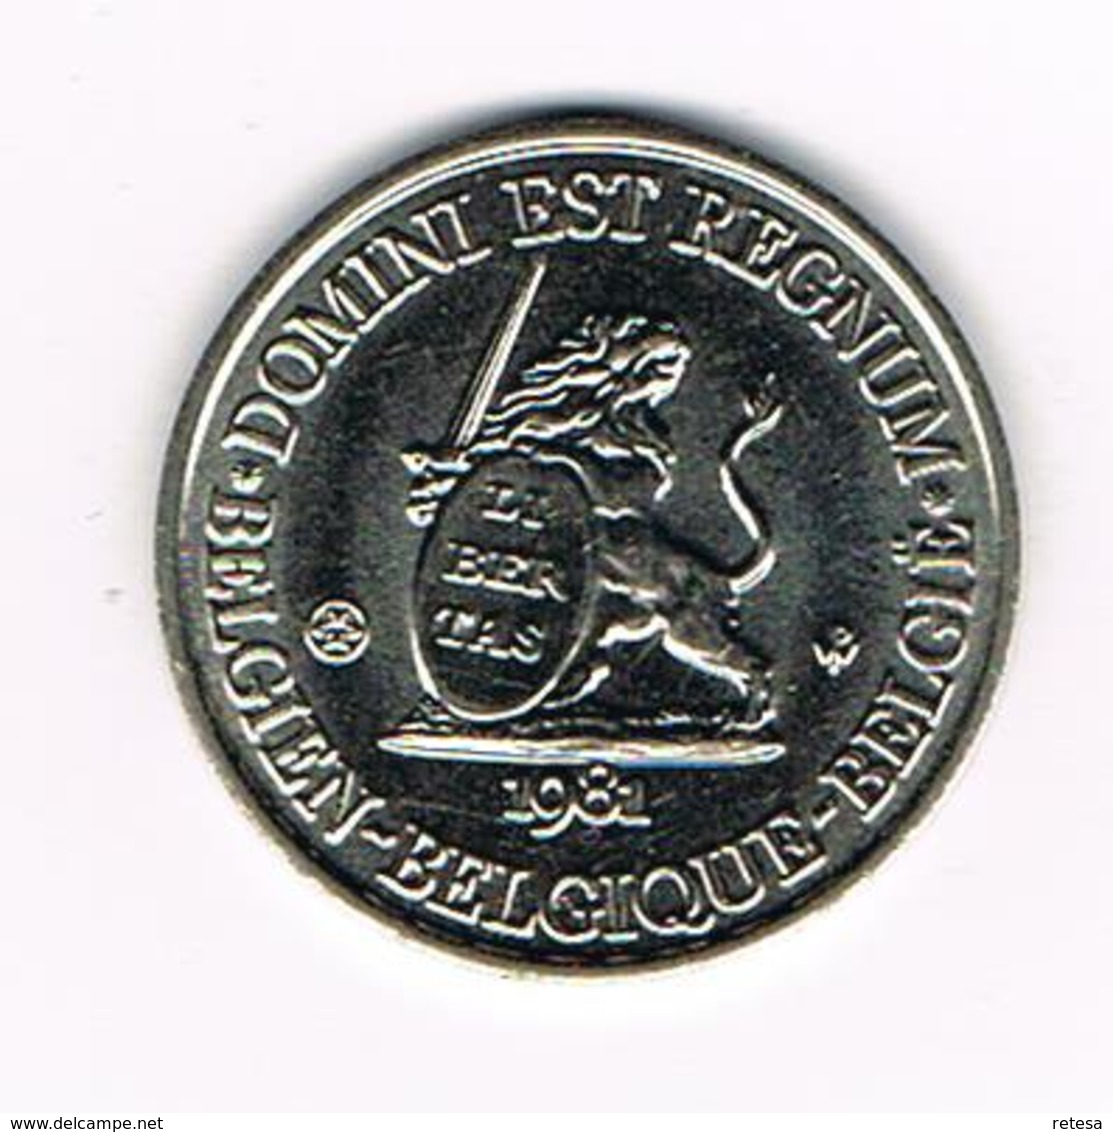 // PENNING  DOMINI EST REGNUM  REGNUM BELGICALE  OOST VLAANDEREN 1981 - 3.000 EX. - Pièces écrasées (Elongated Coins)